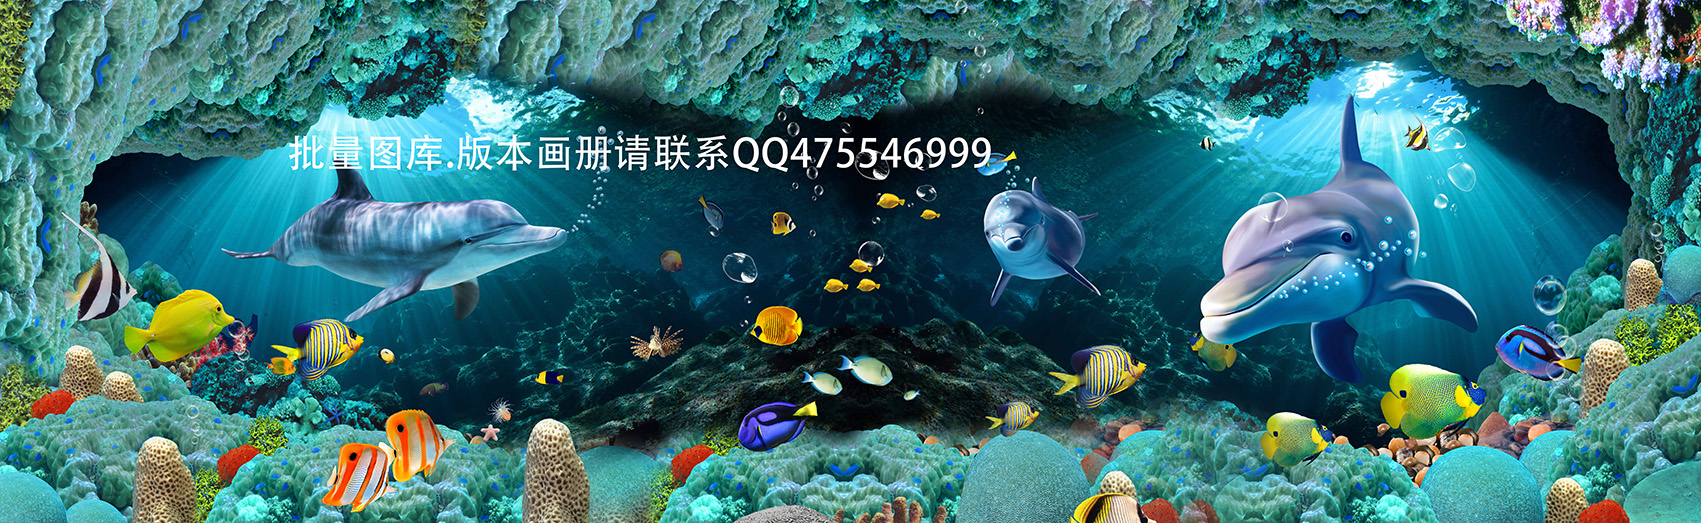 Hình ảnh tranh dán tường 3D con cá humandecor----2983